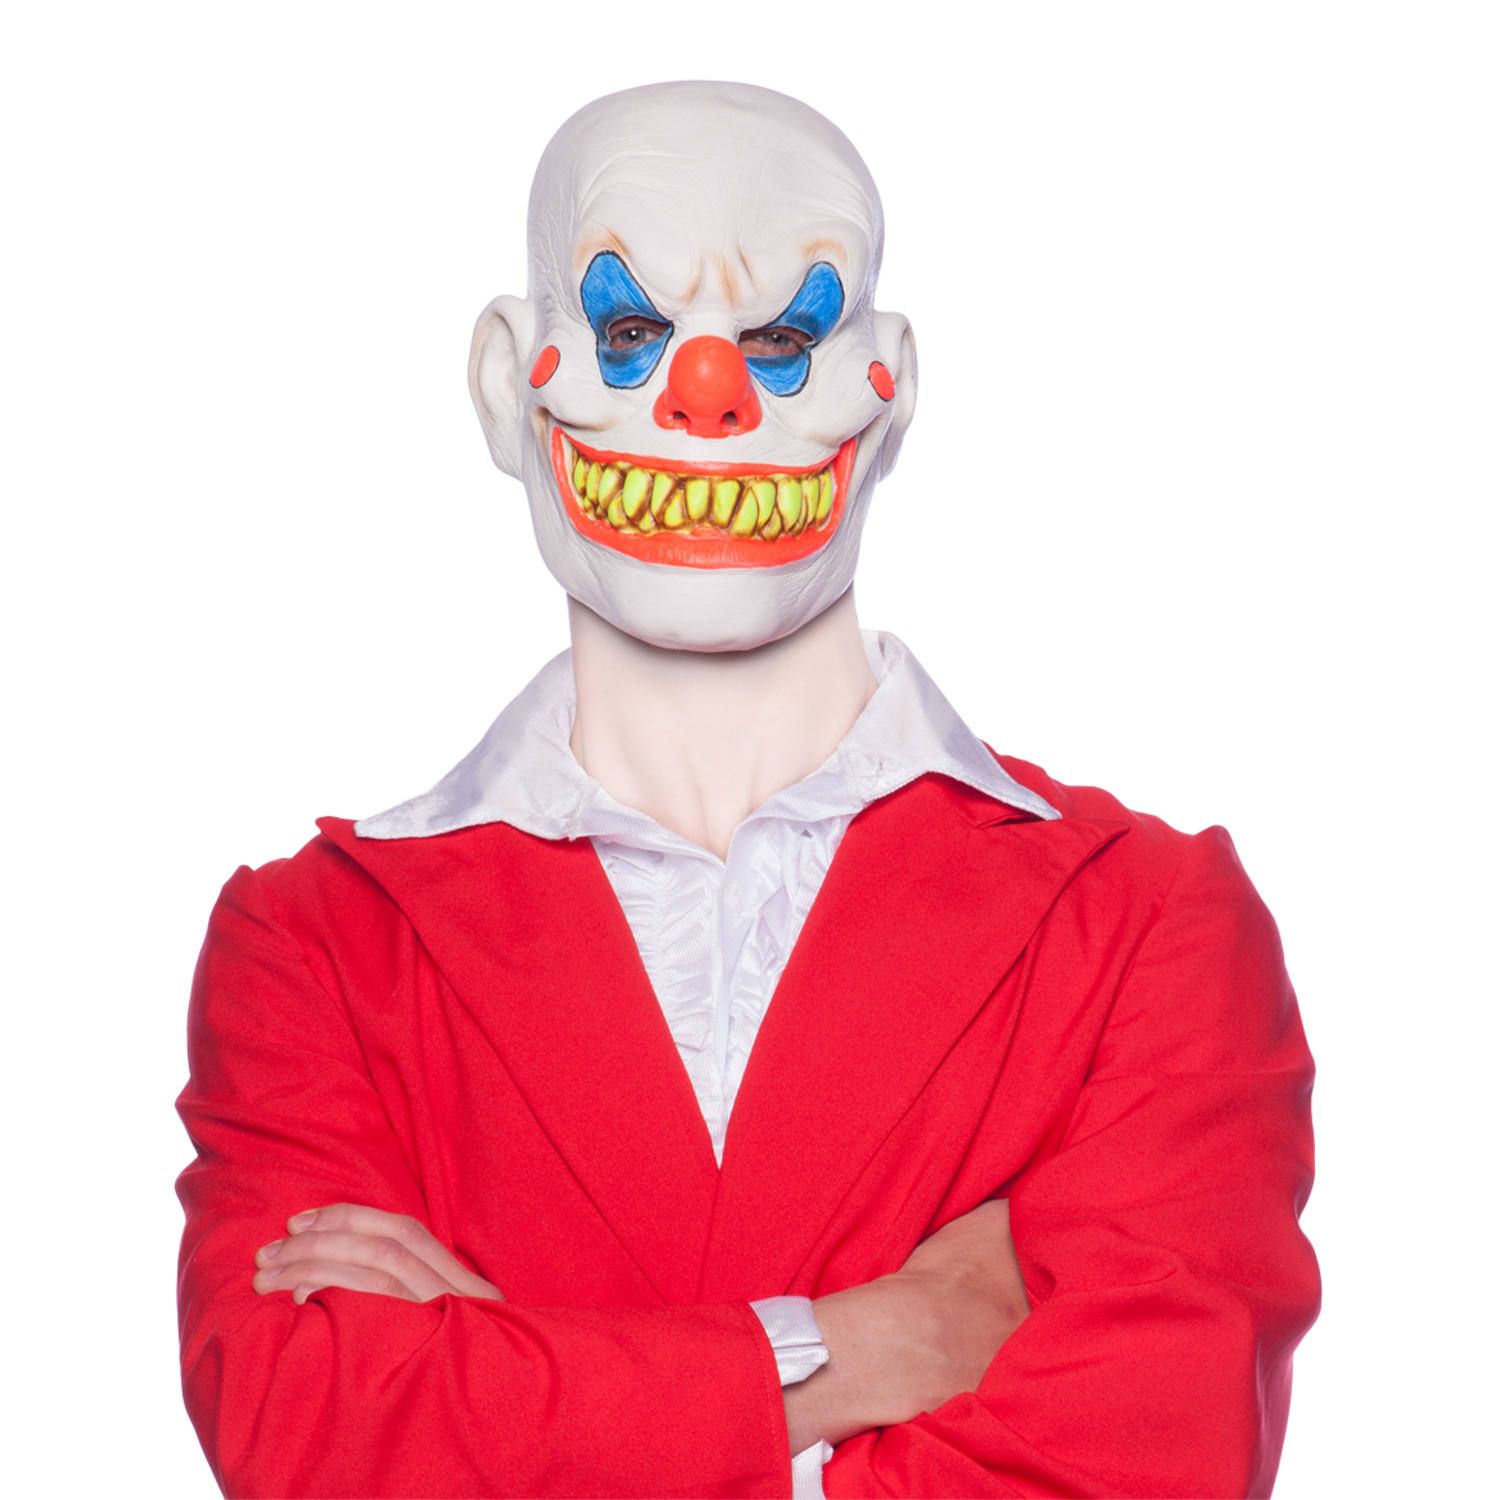 Creepy clown horror masker latex